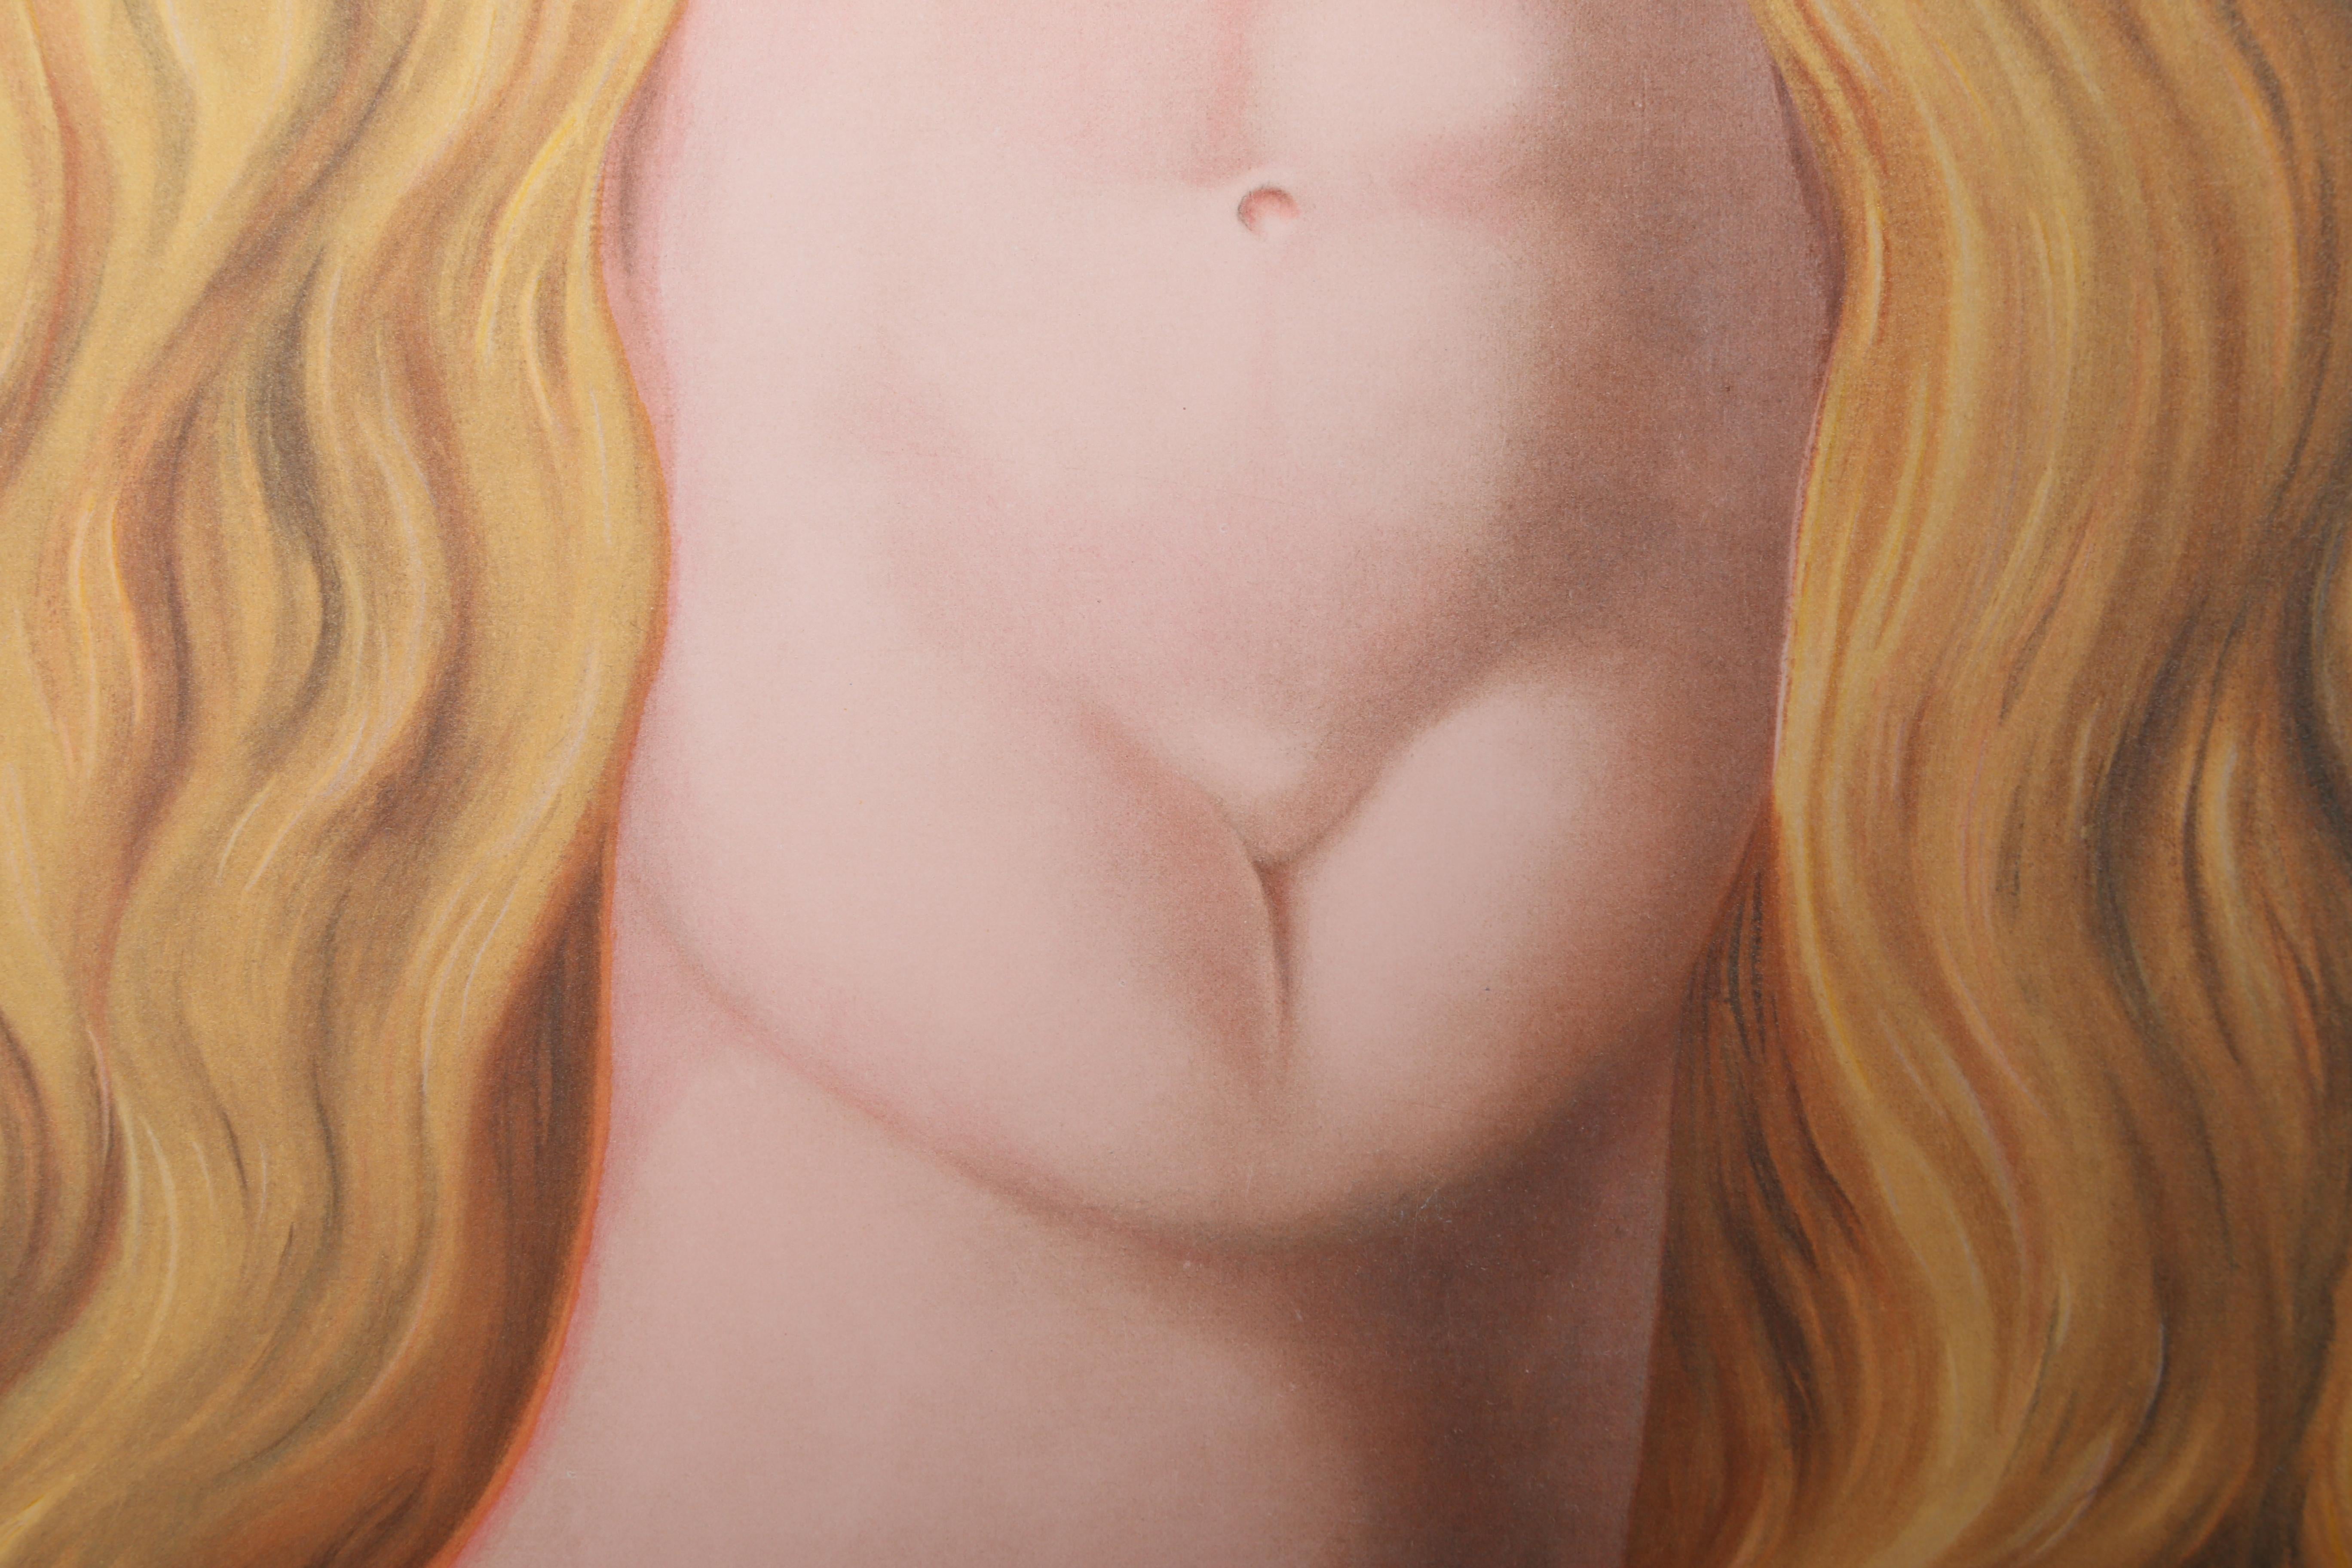 Artiste : René Magritte (d'après)
Titre : Le Viol
Médium : Lithographie, estampillée à l'encre 